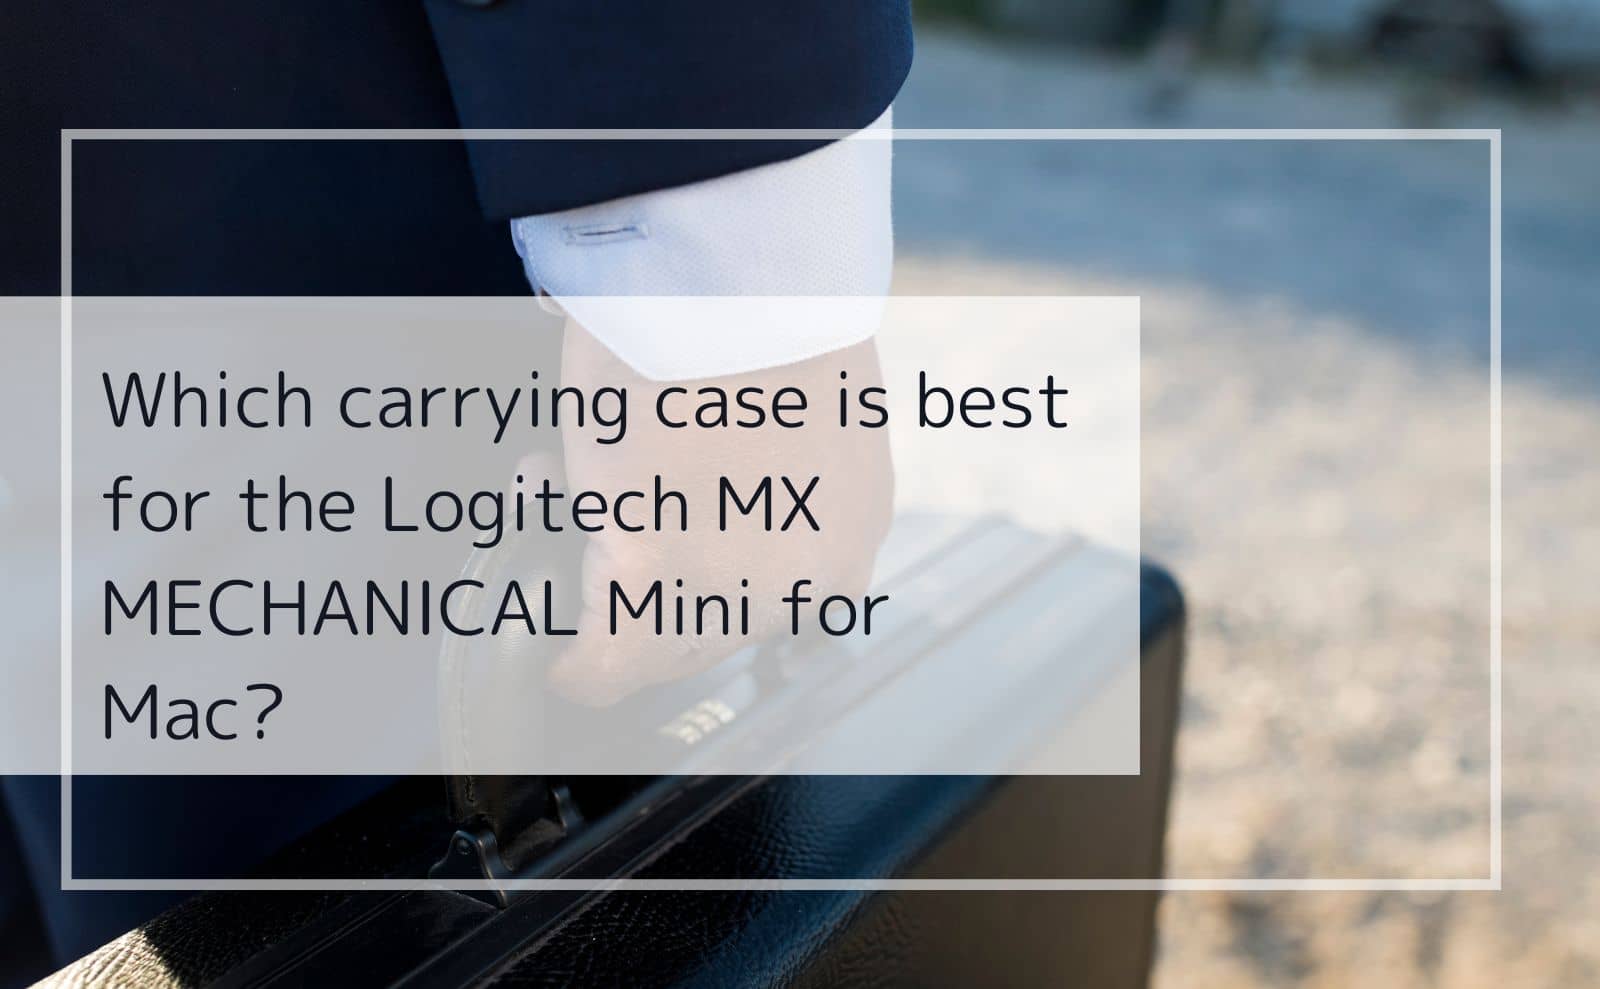 Logicool MX MECHANICAL Mini for Macの持ち運びに最適なキャリング